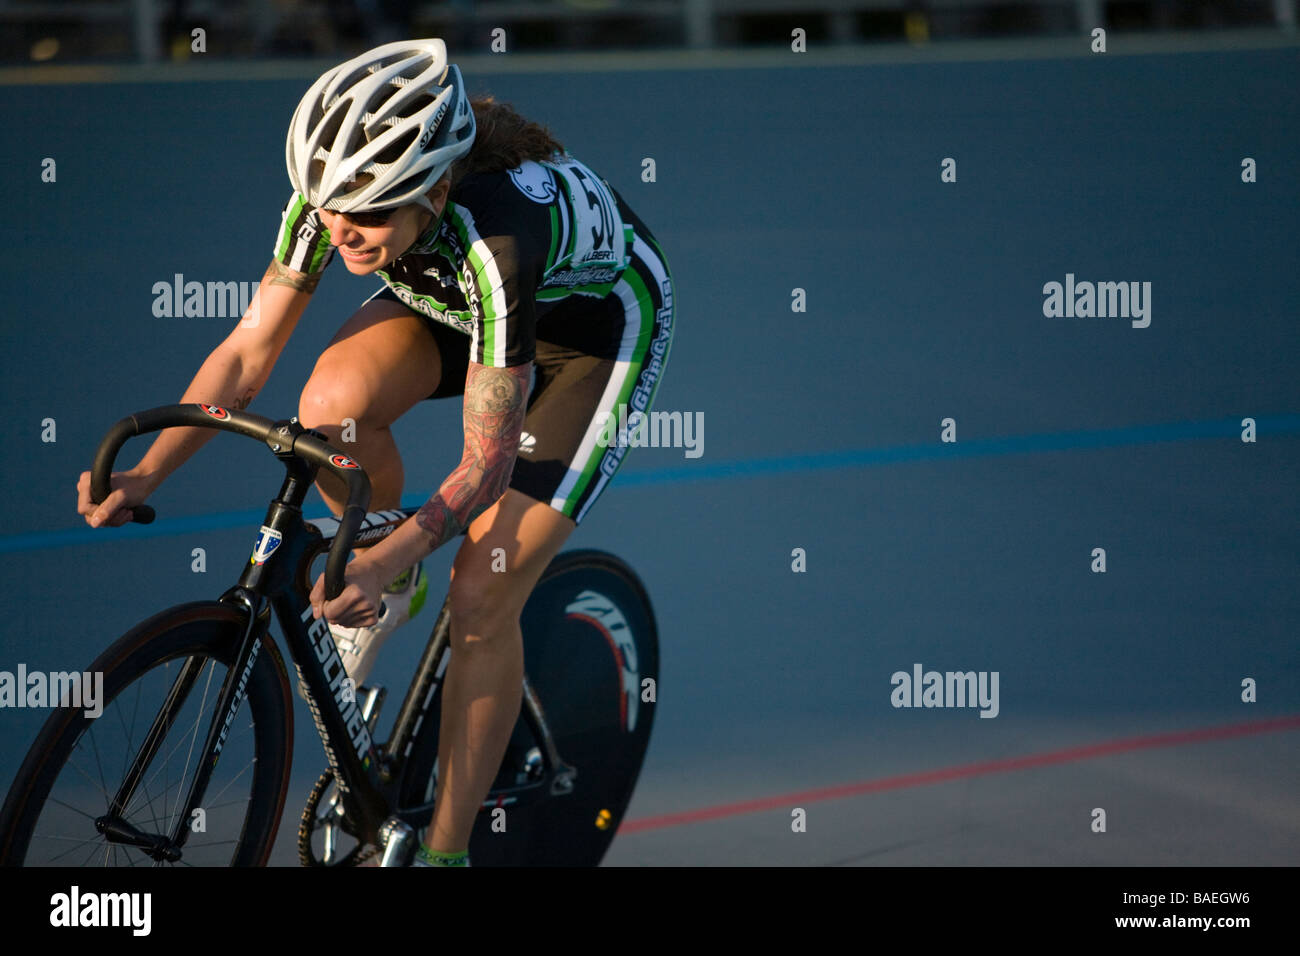 Femme Northbrook ILLINOIS cycliste d'avance sur les concurrents pendant la course à vélo piste vélodrome Banque D'Images